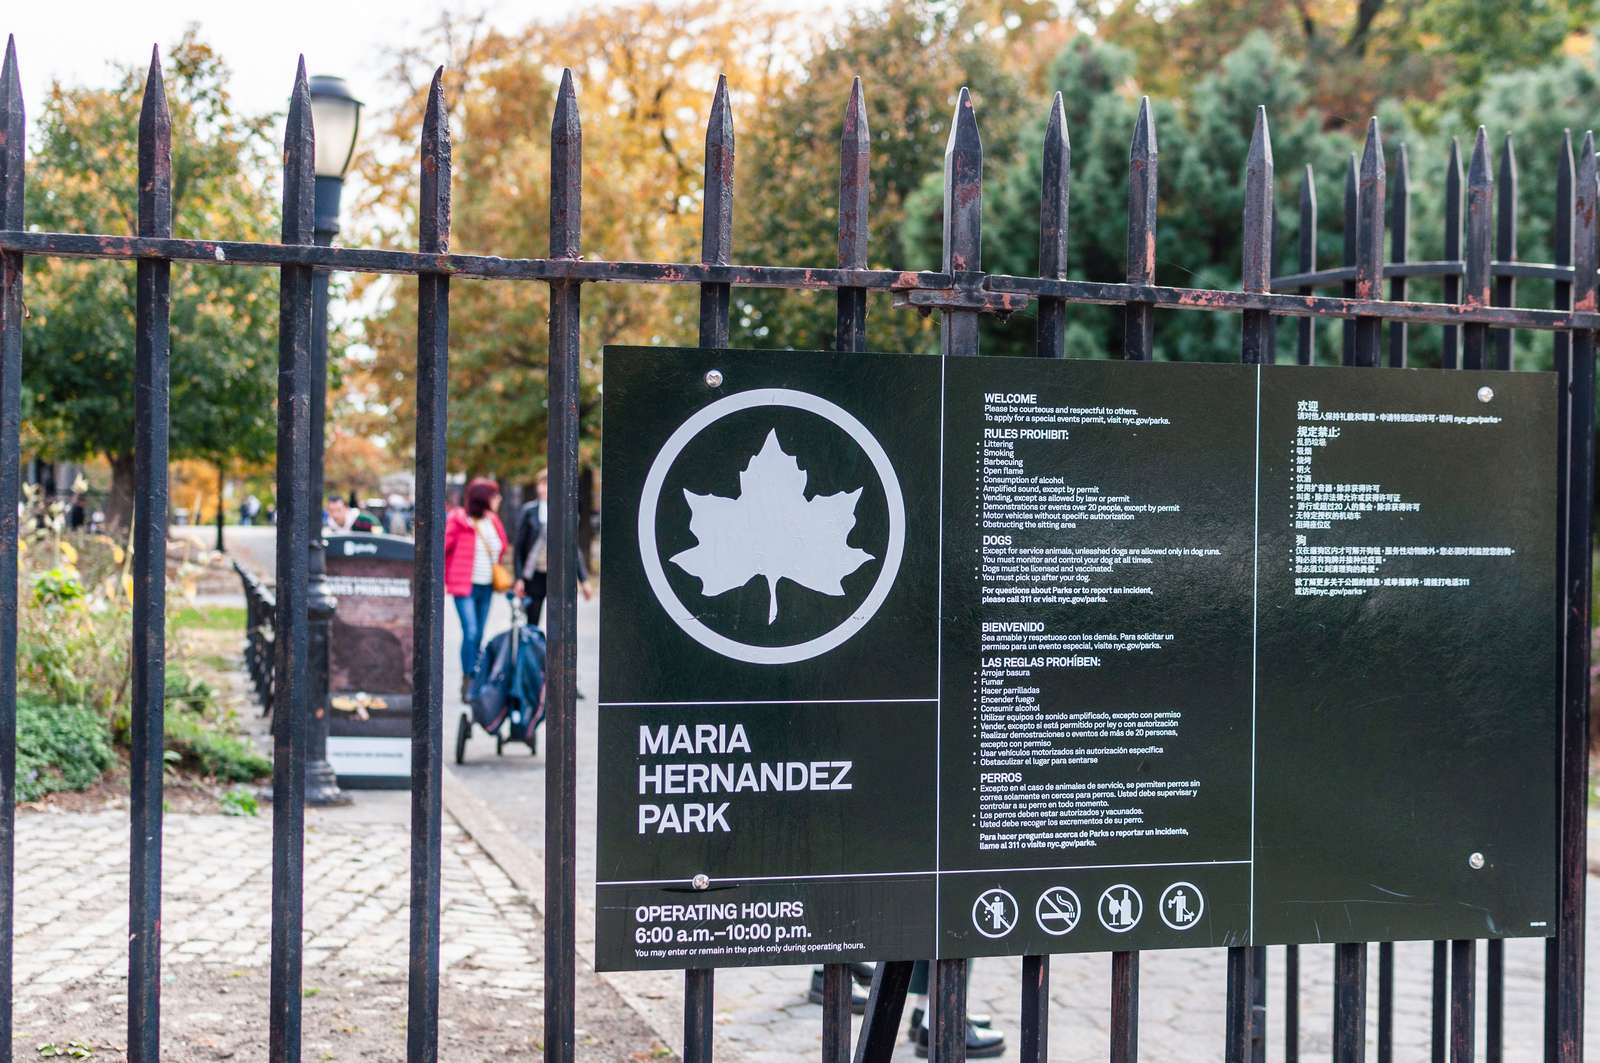 Maria Hernandez Park Gate entrance and sign